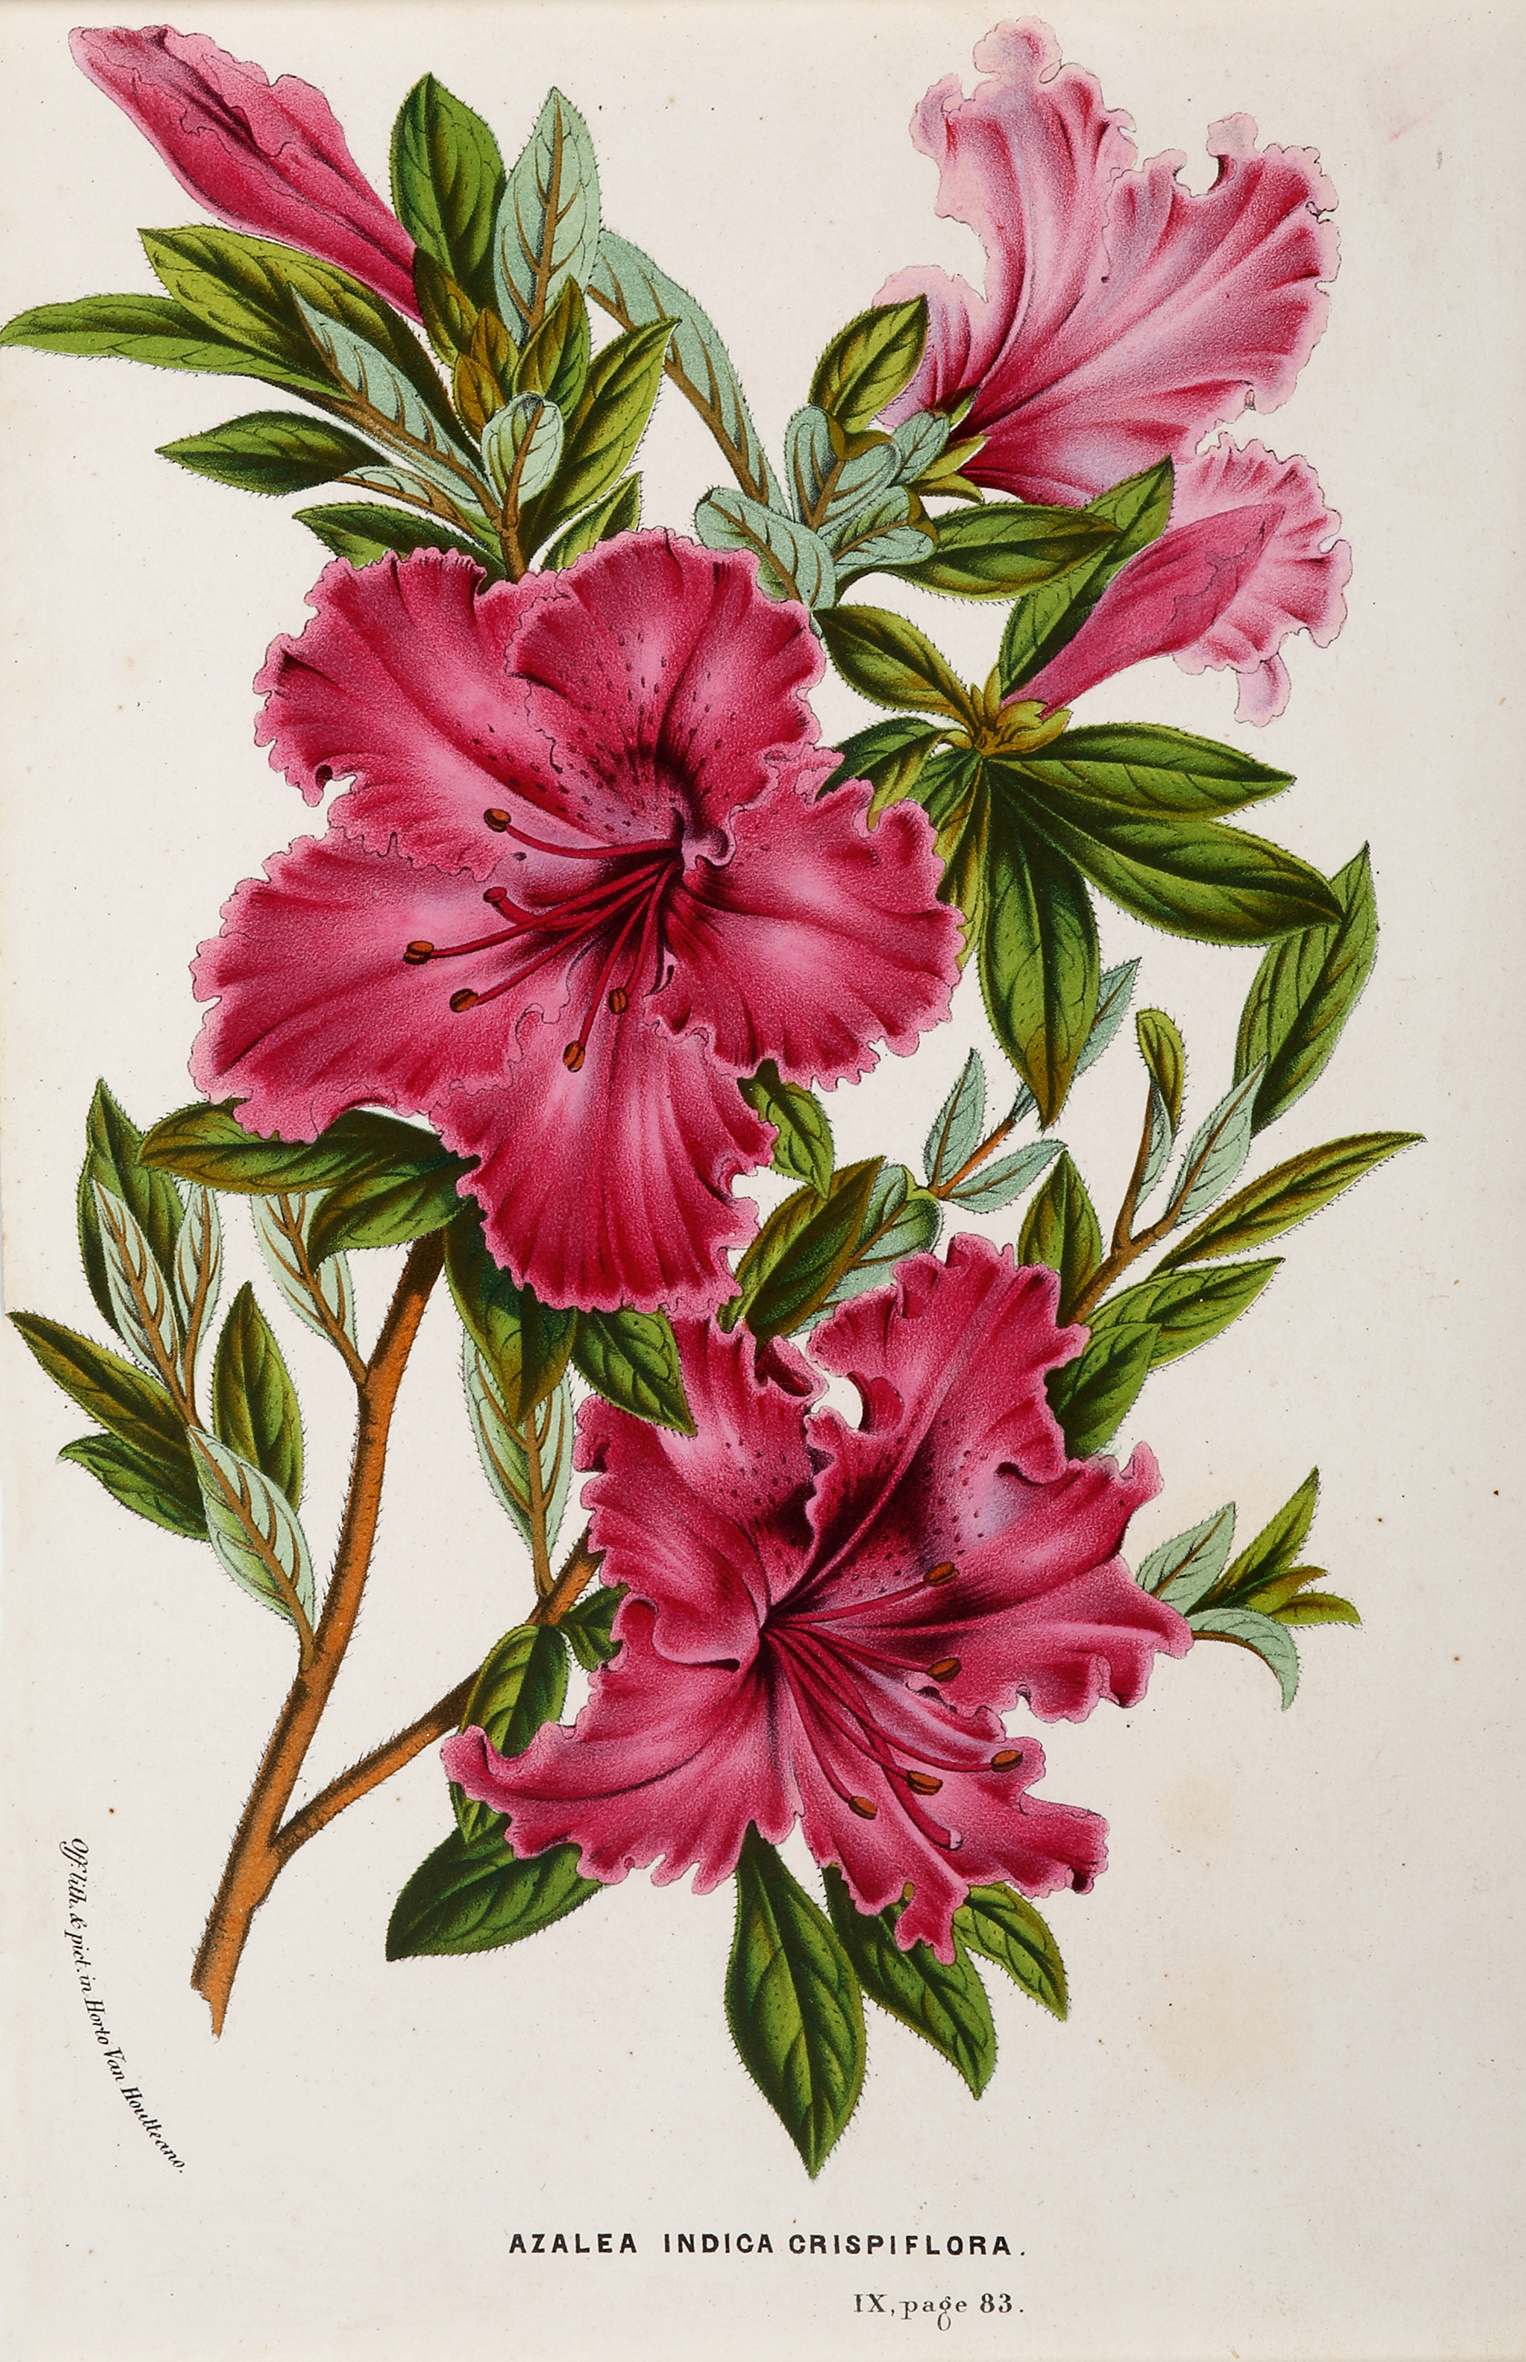 Azalea Indica Crispiflora - Antique Print from 1883